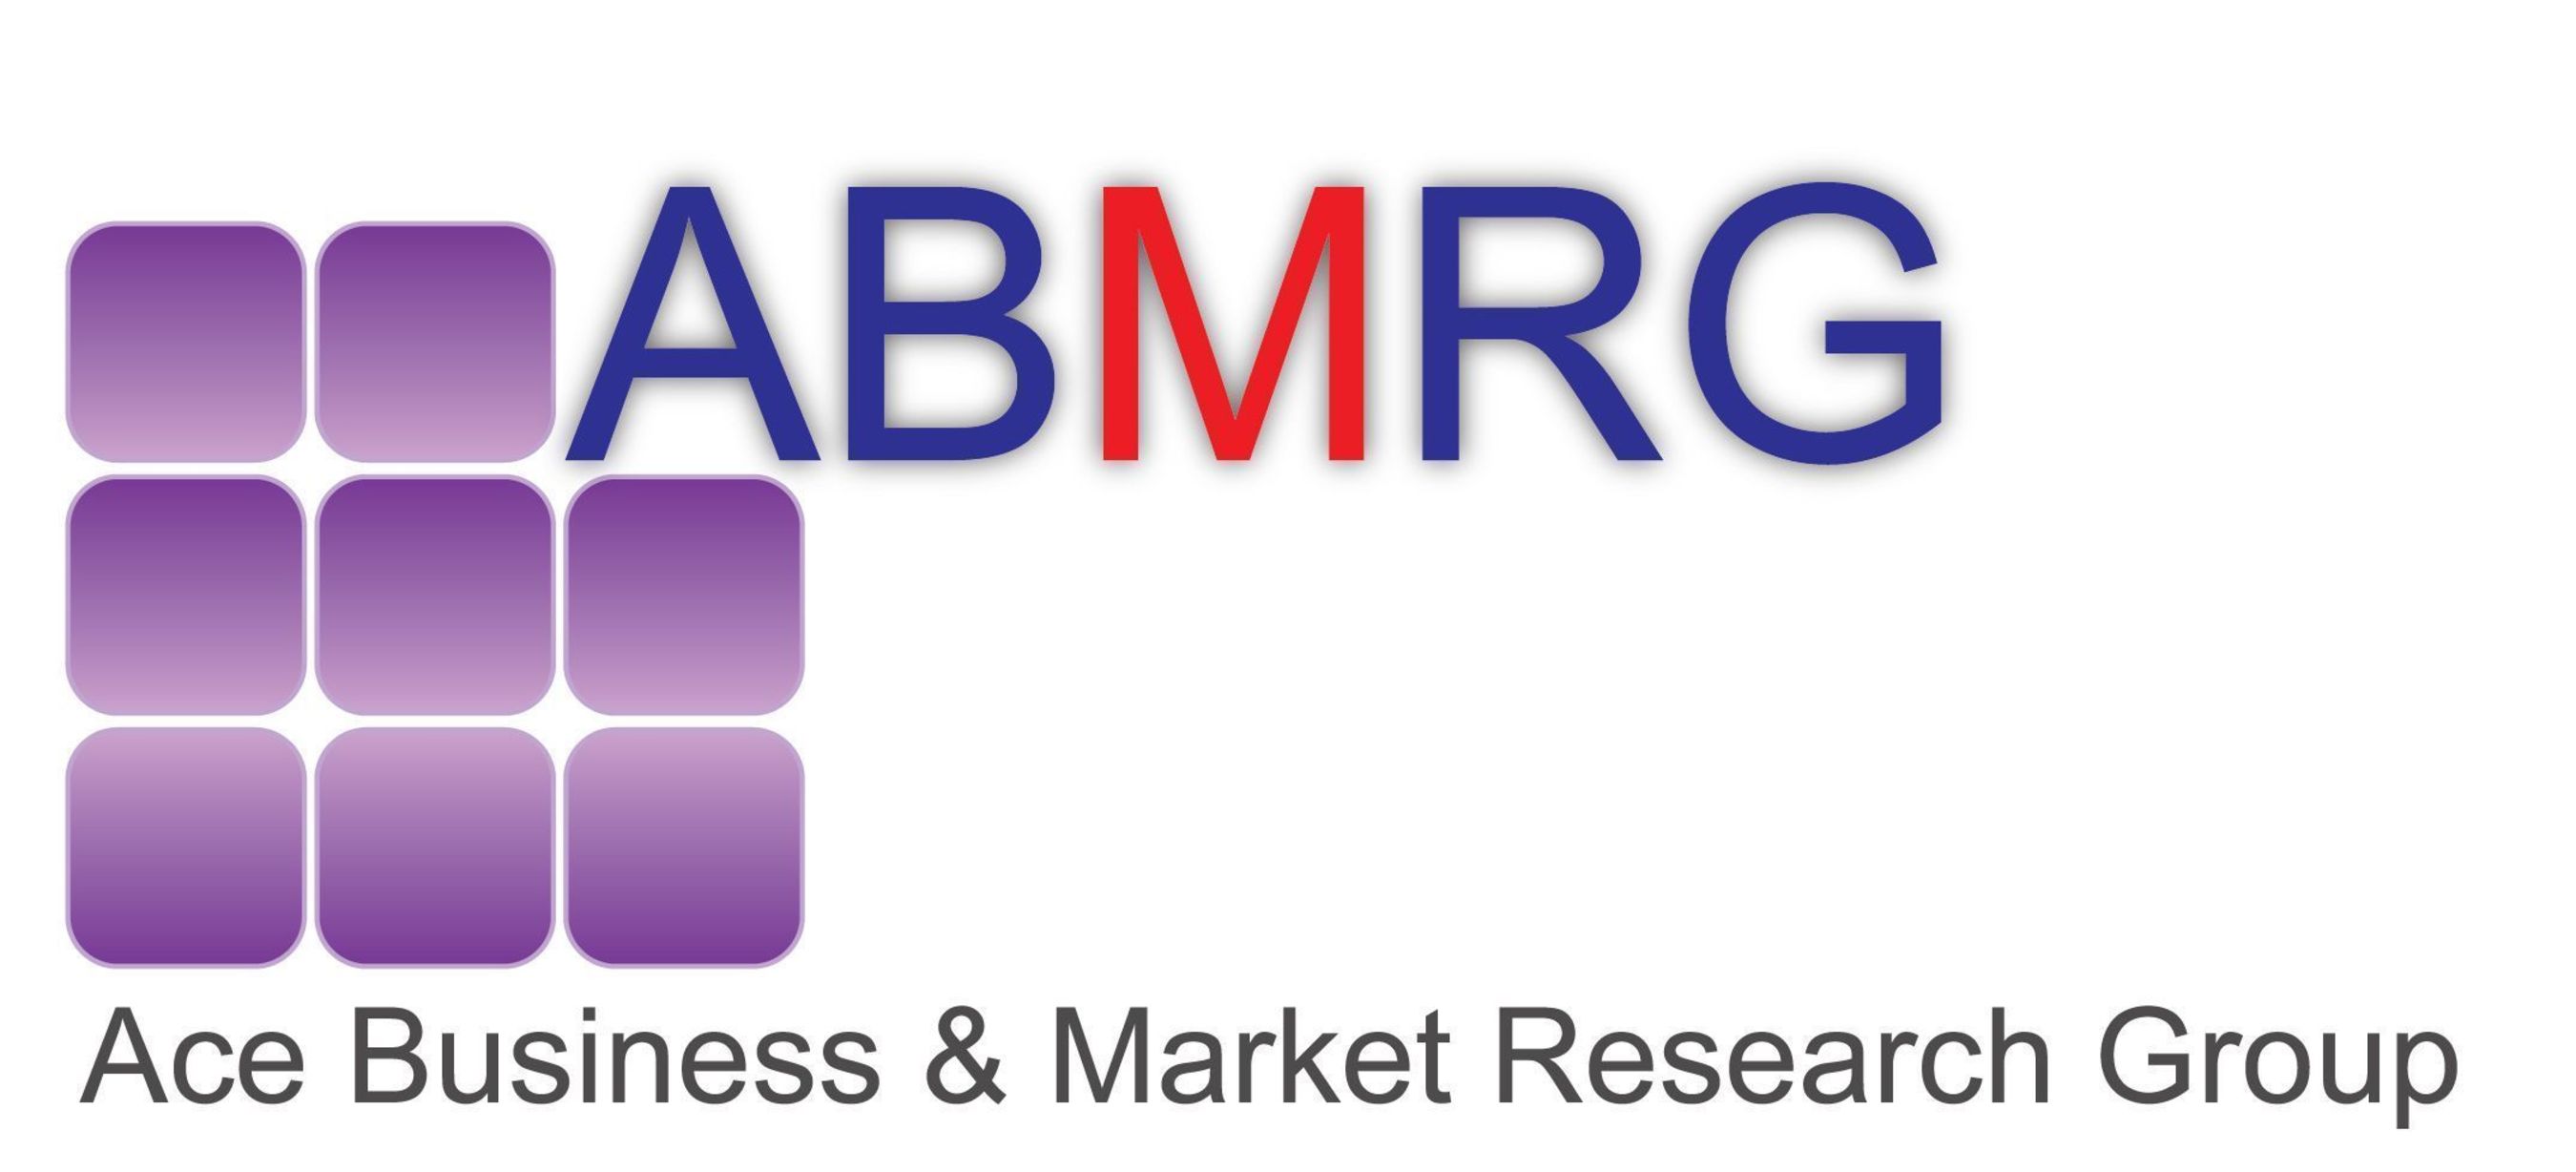 ABMRG Logo (PRNewsFoto/ABMRG)